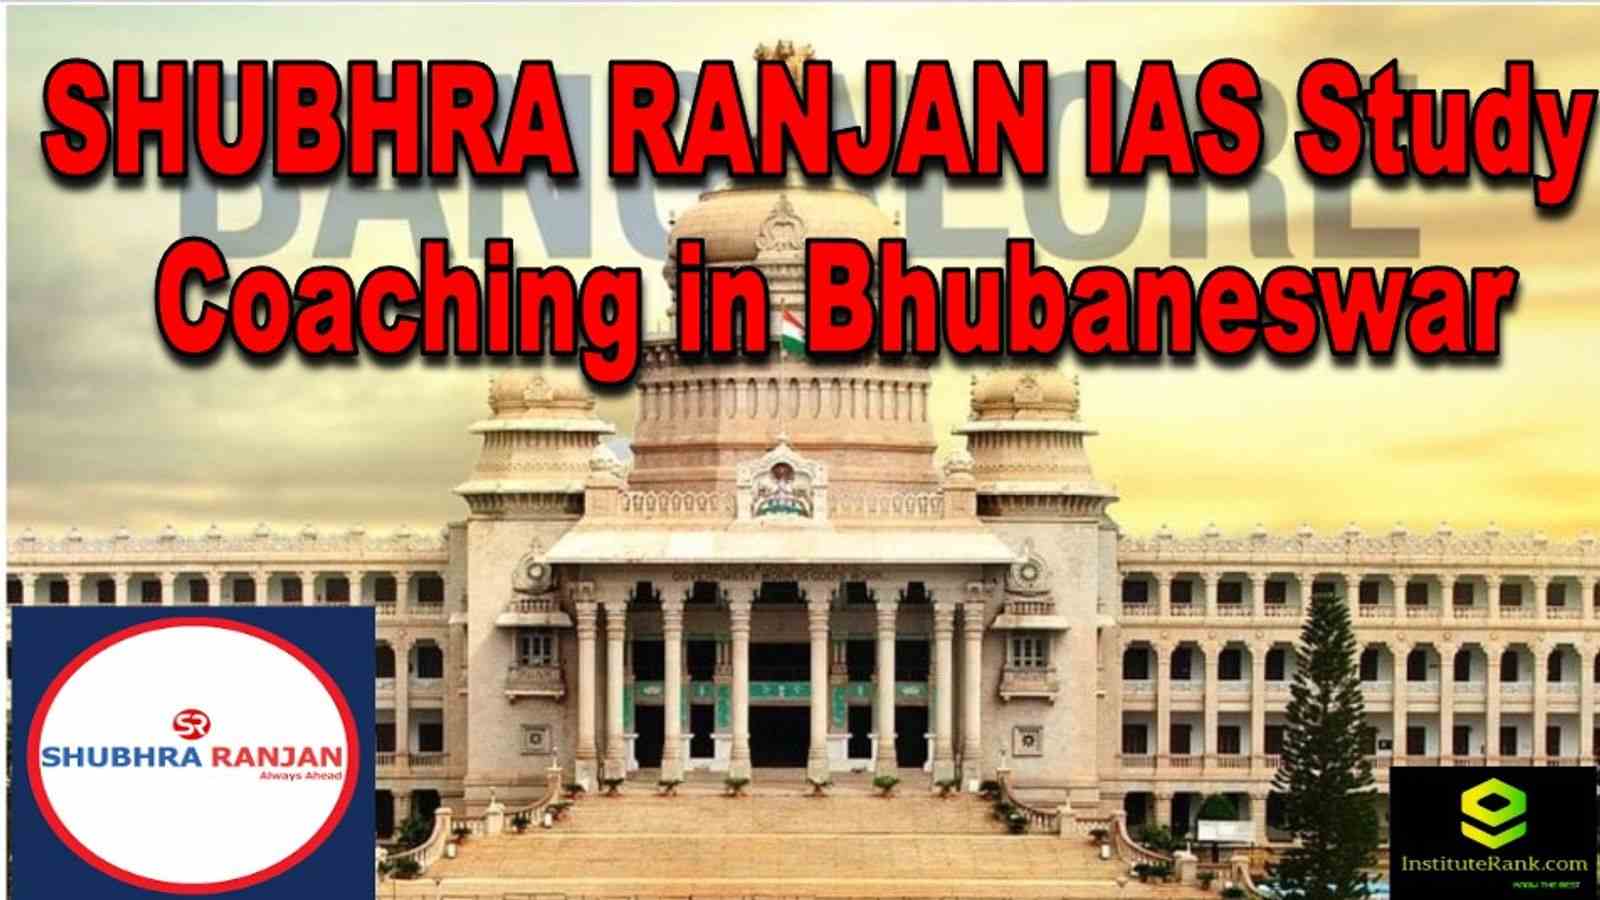 SHUBHRA RANJAN IAS Study Coaching in Bhubaneswar | IAS Coaching ...